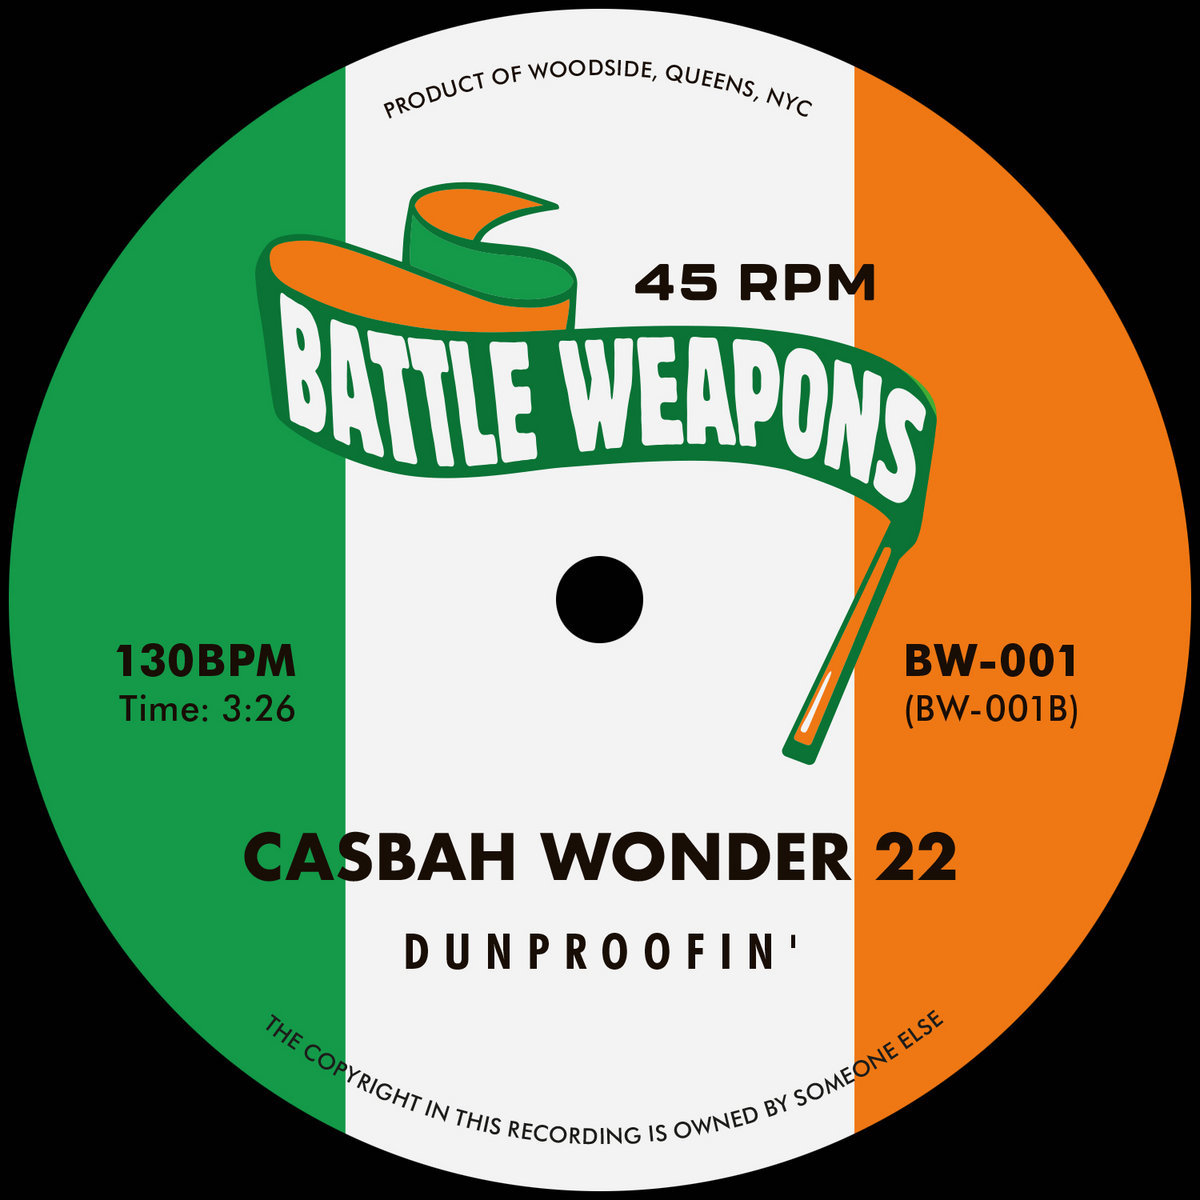 Dunproofin - Casbah Wonder 22 vinyl bandcamp